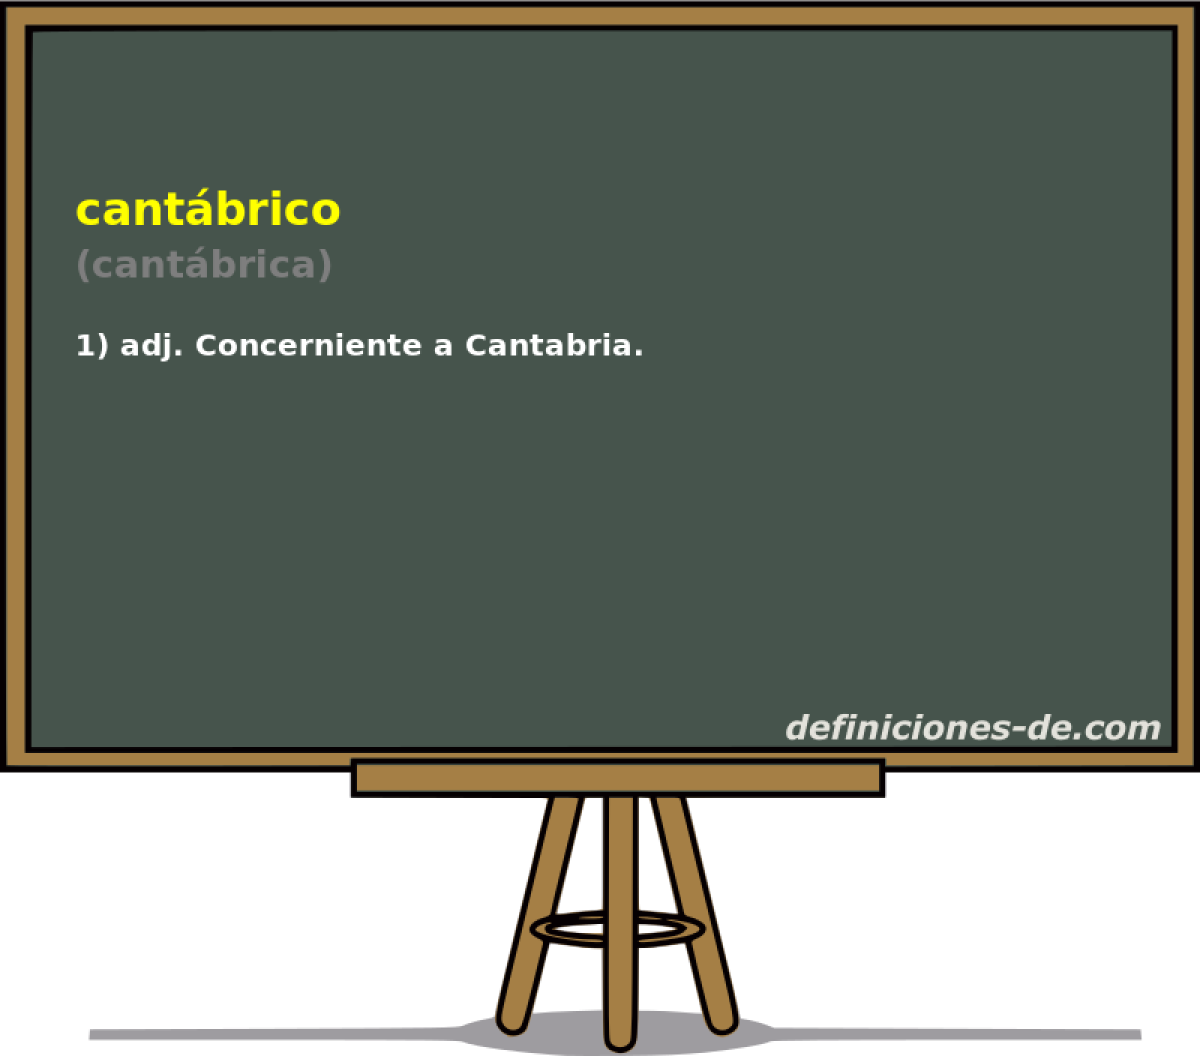 cantbrico (cantbrica)